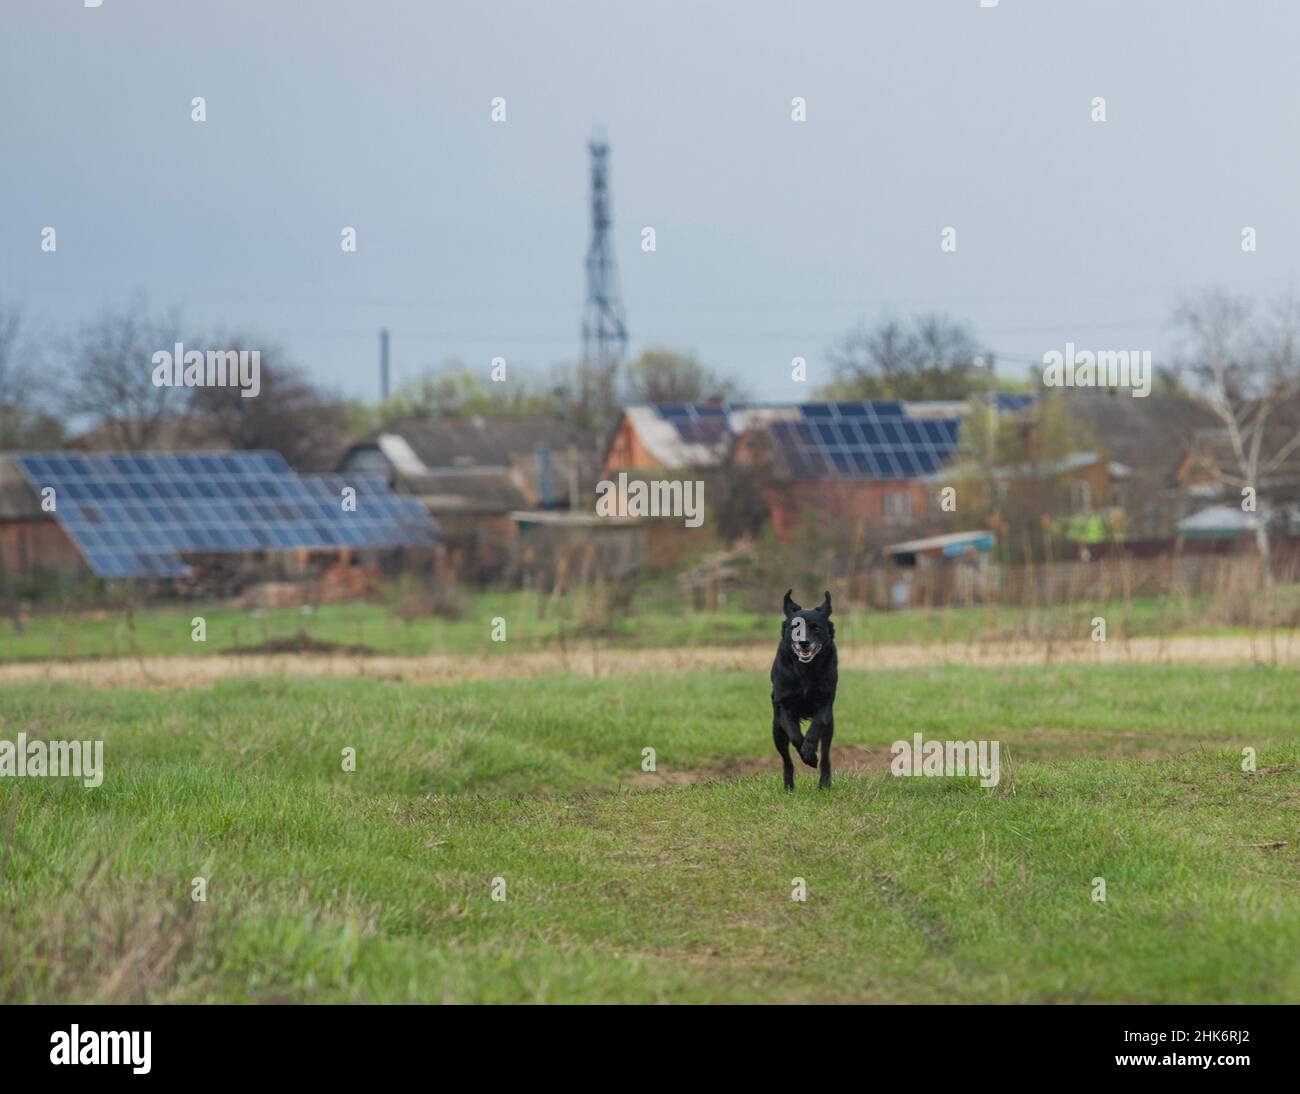 Un cane nero, che corre nel prato, con piccole centrali solari private sullo sfondo. Foto Stock